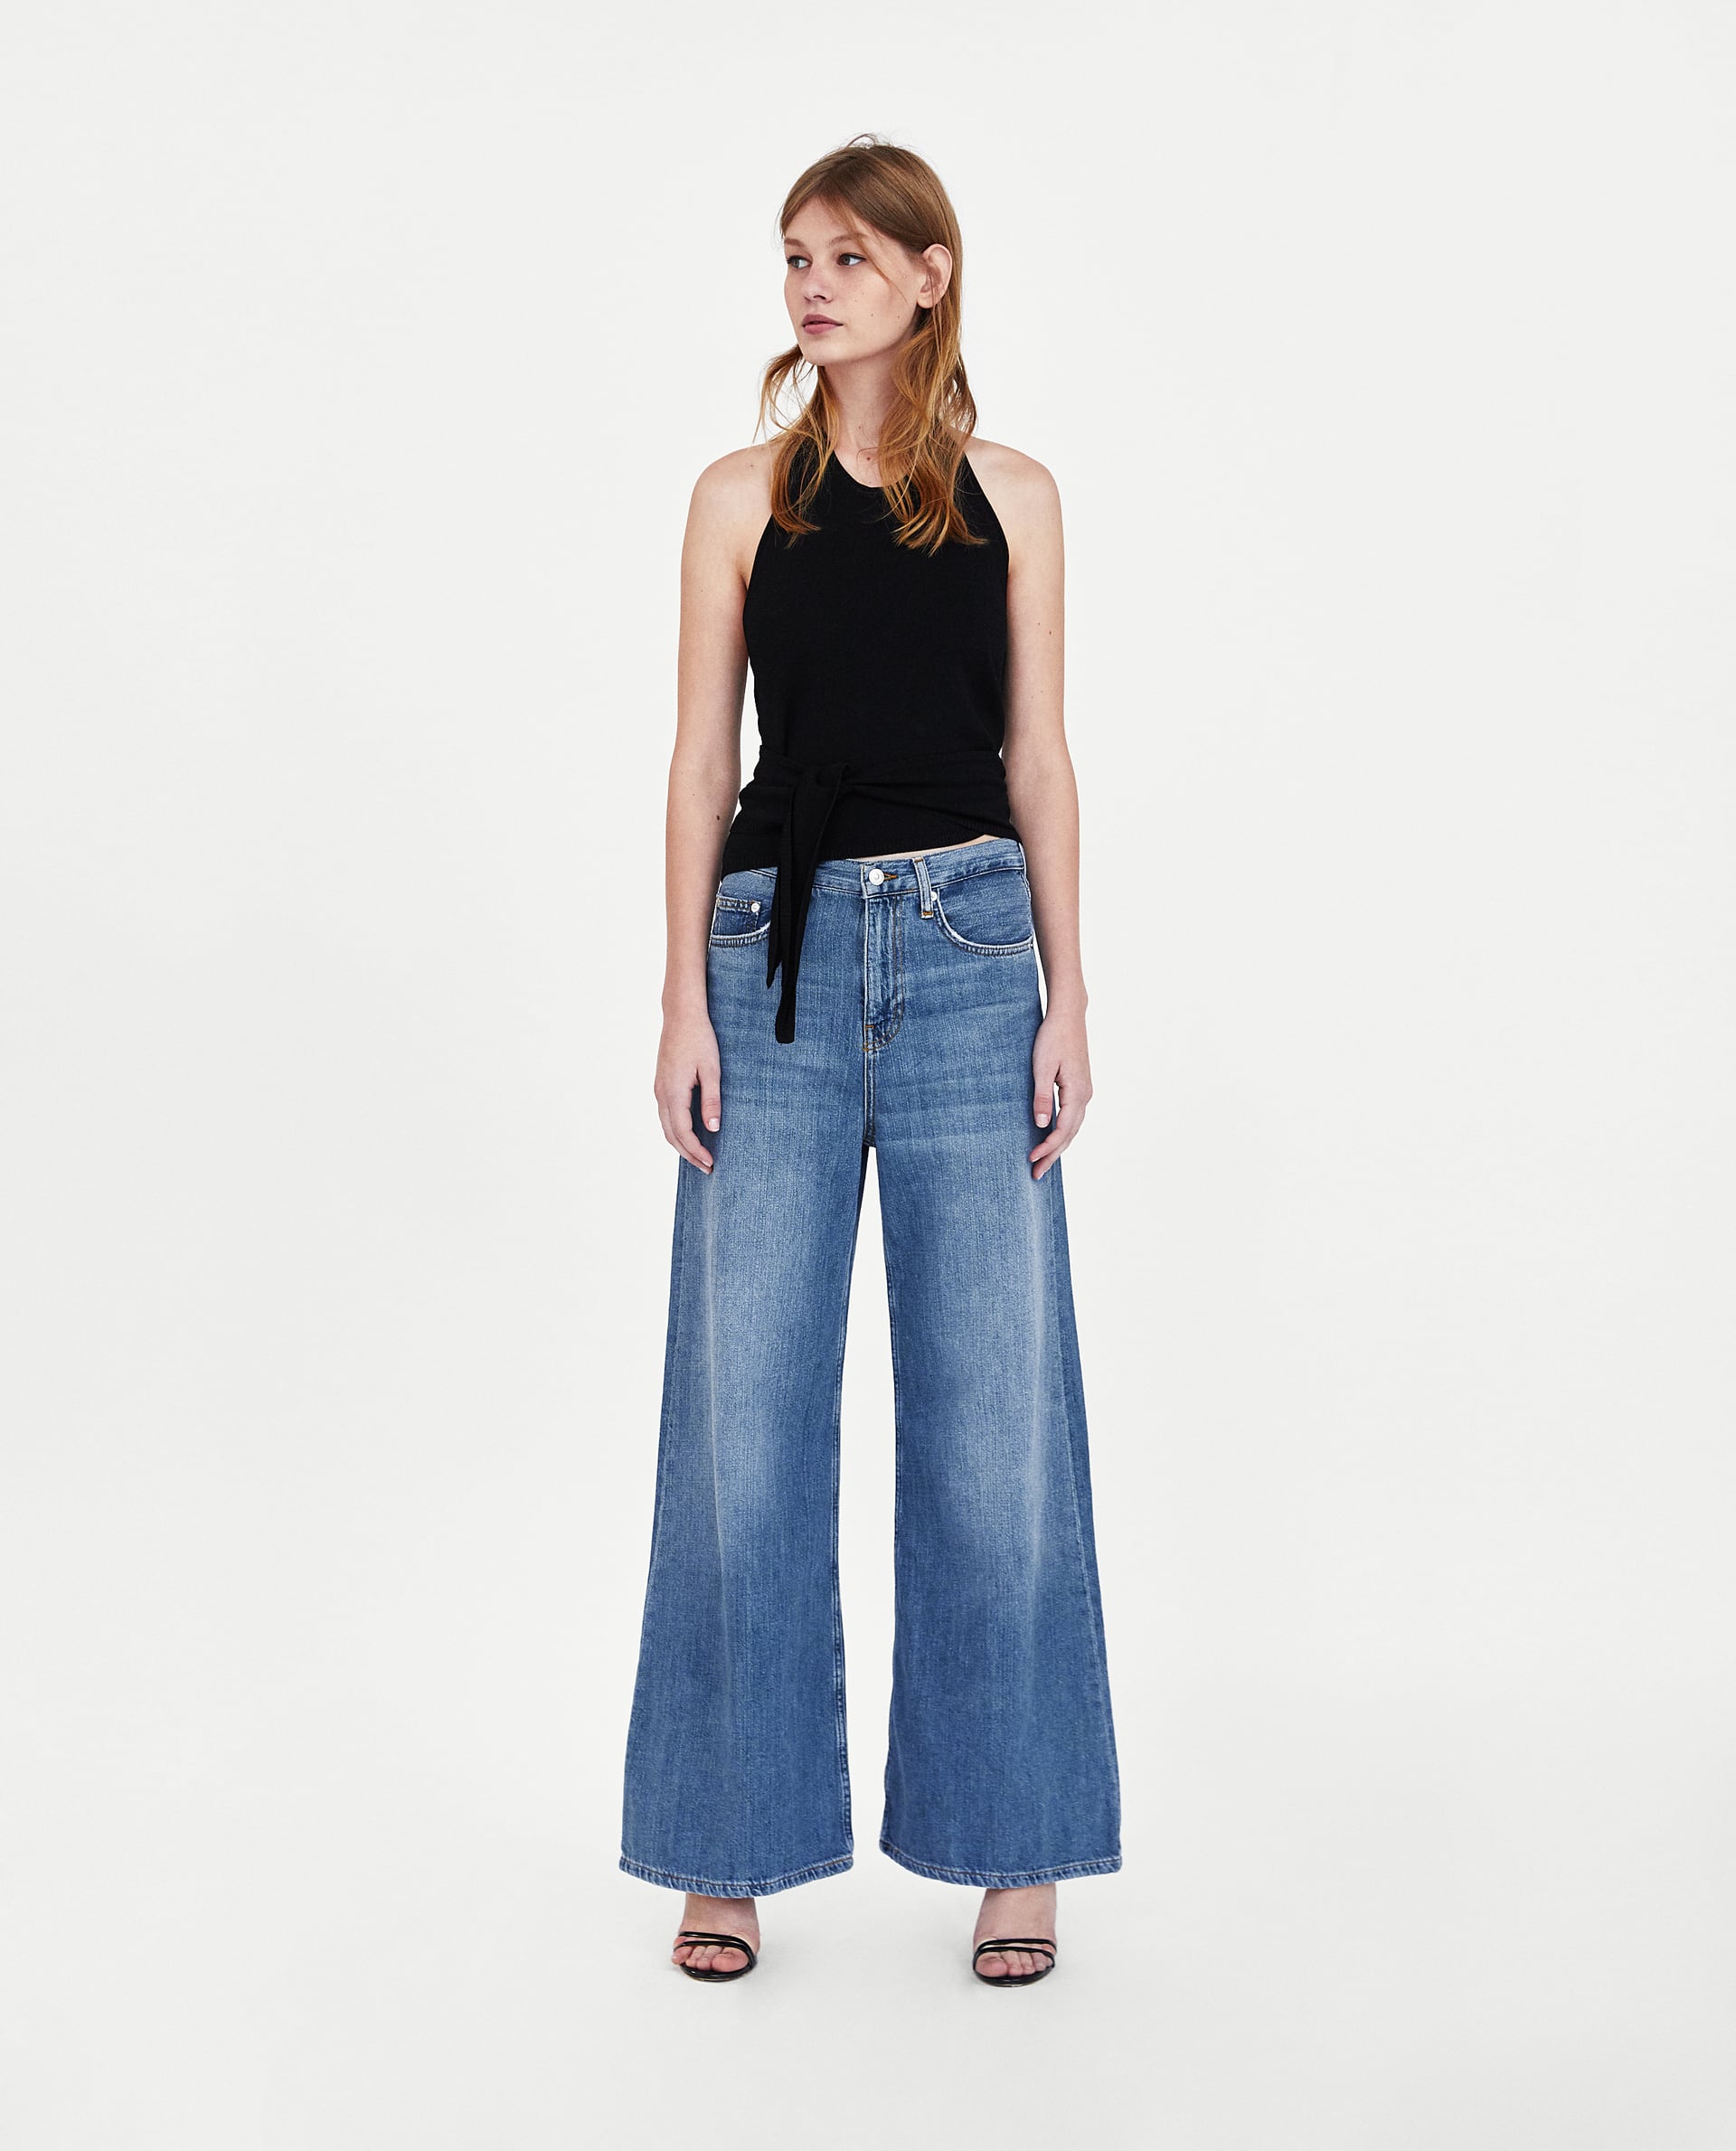 Модель в широких джинсах с завышенной талией